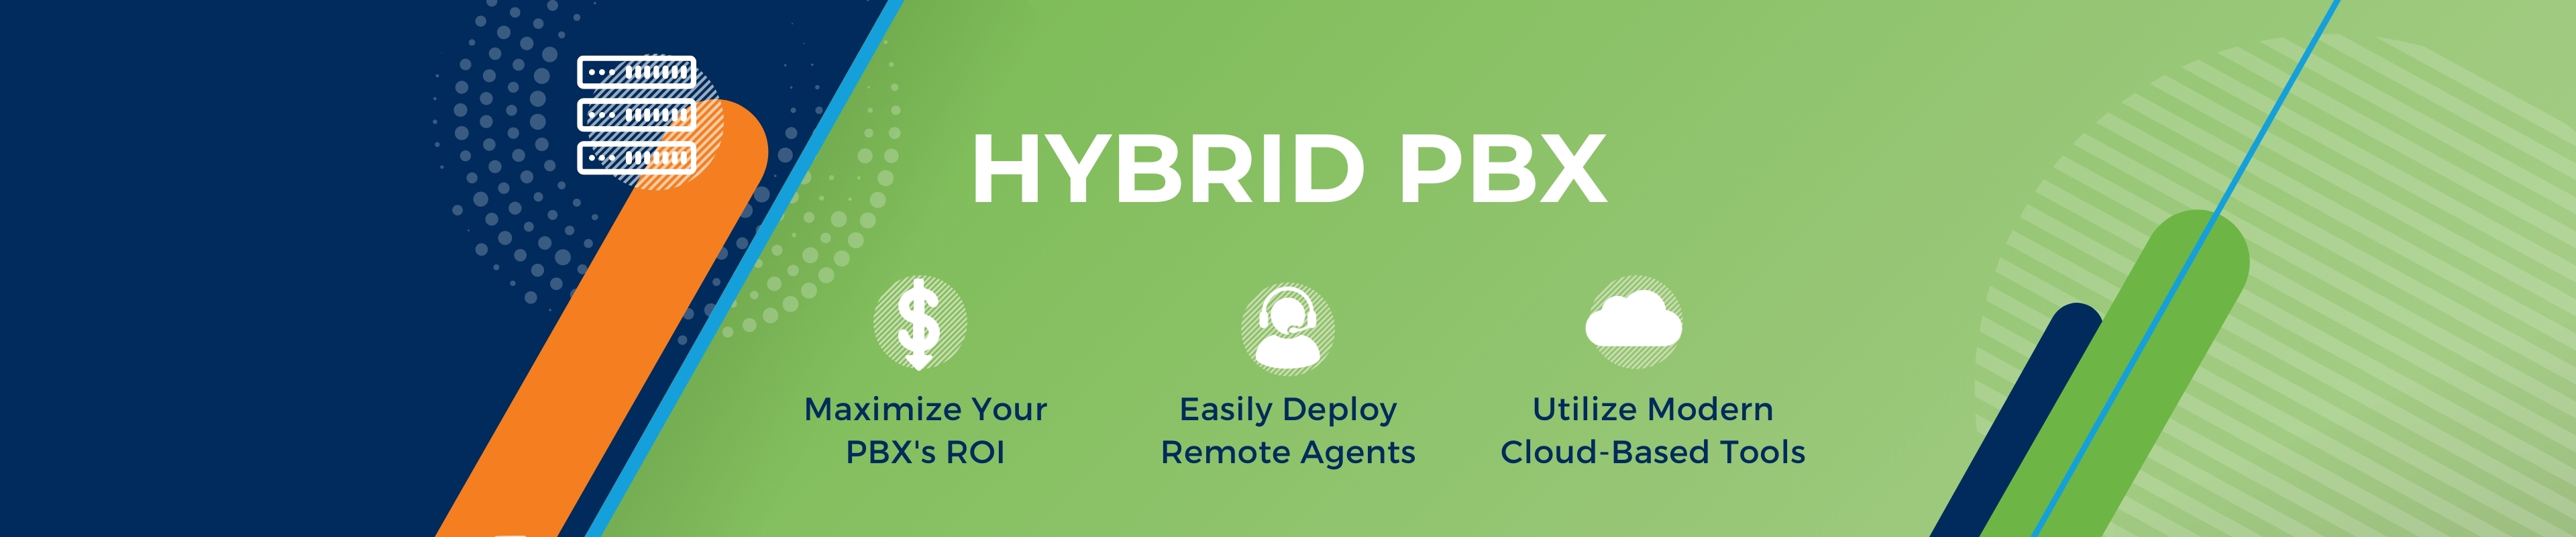 Hybrid PBX